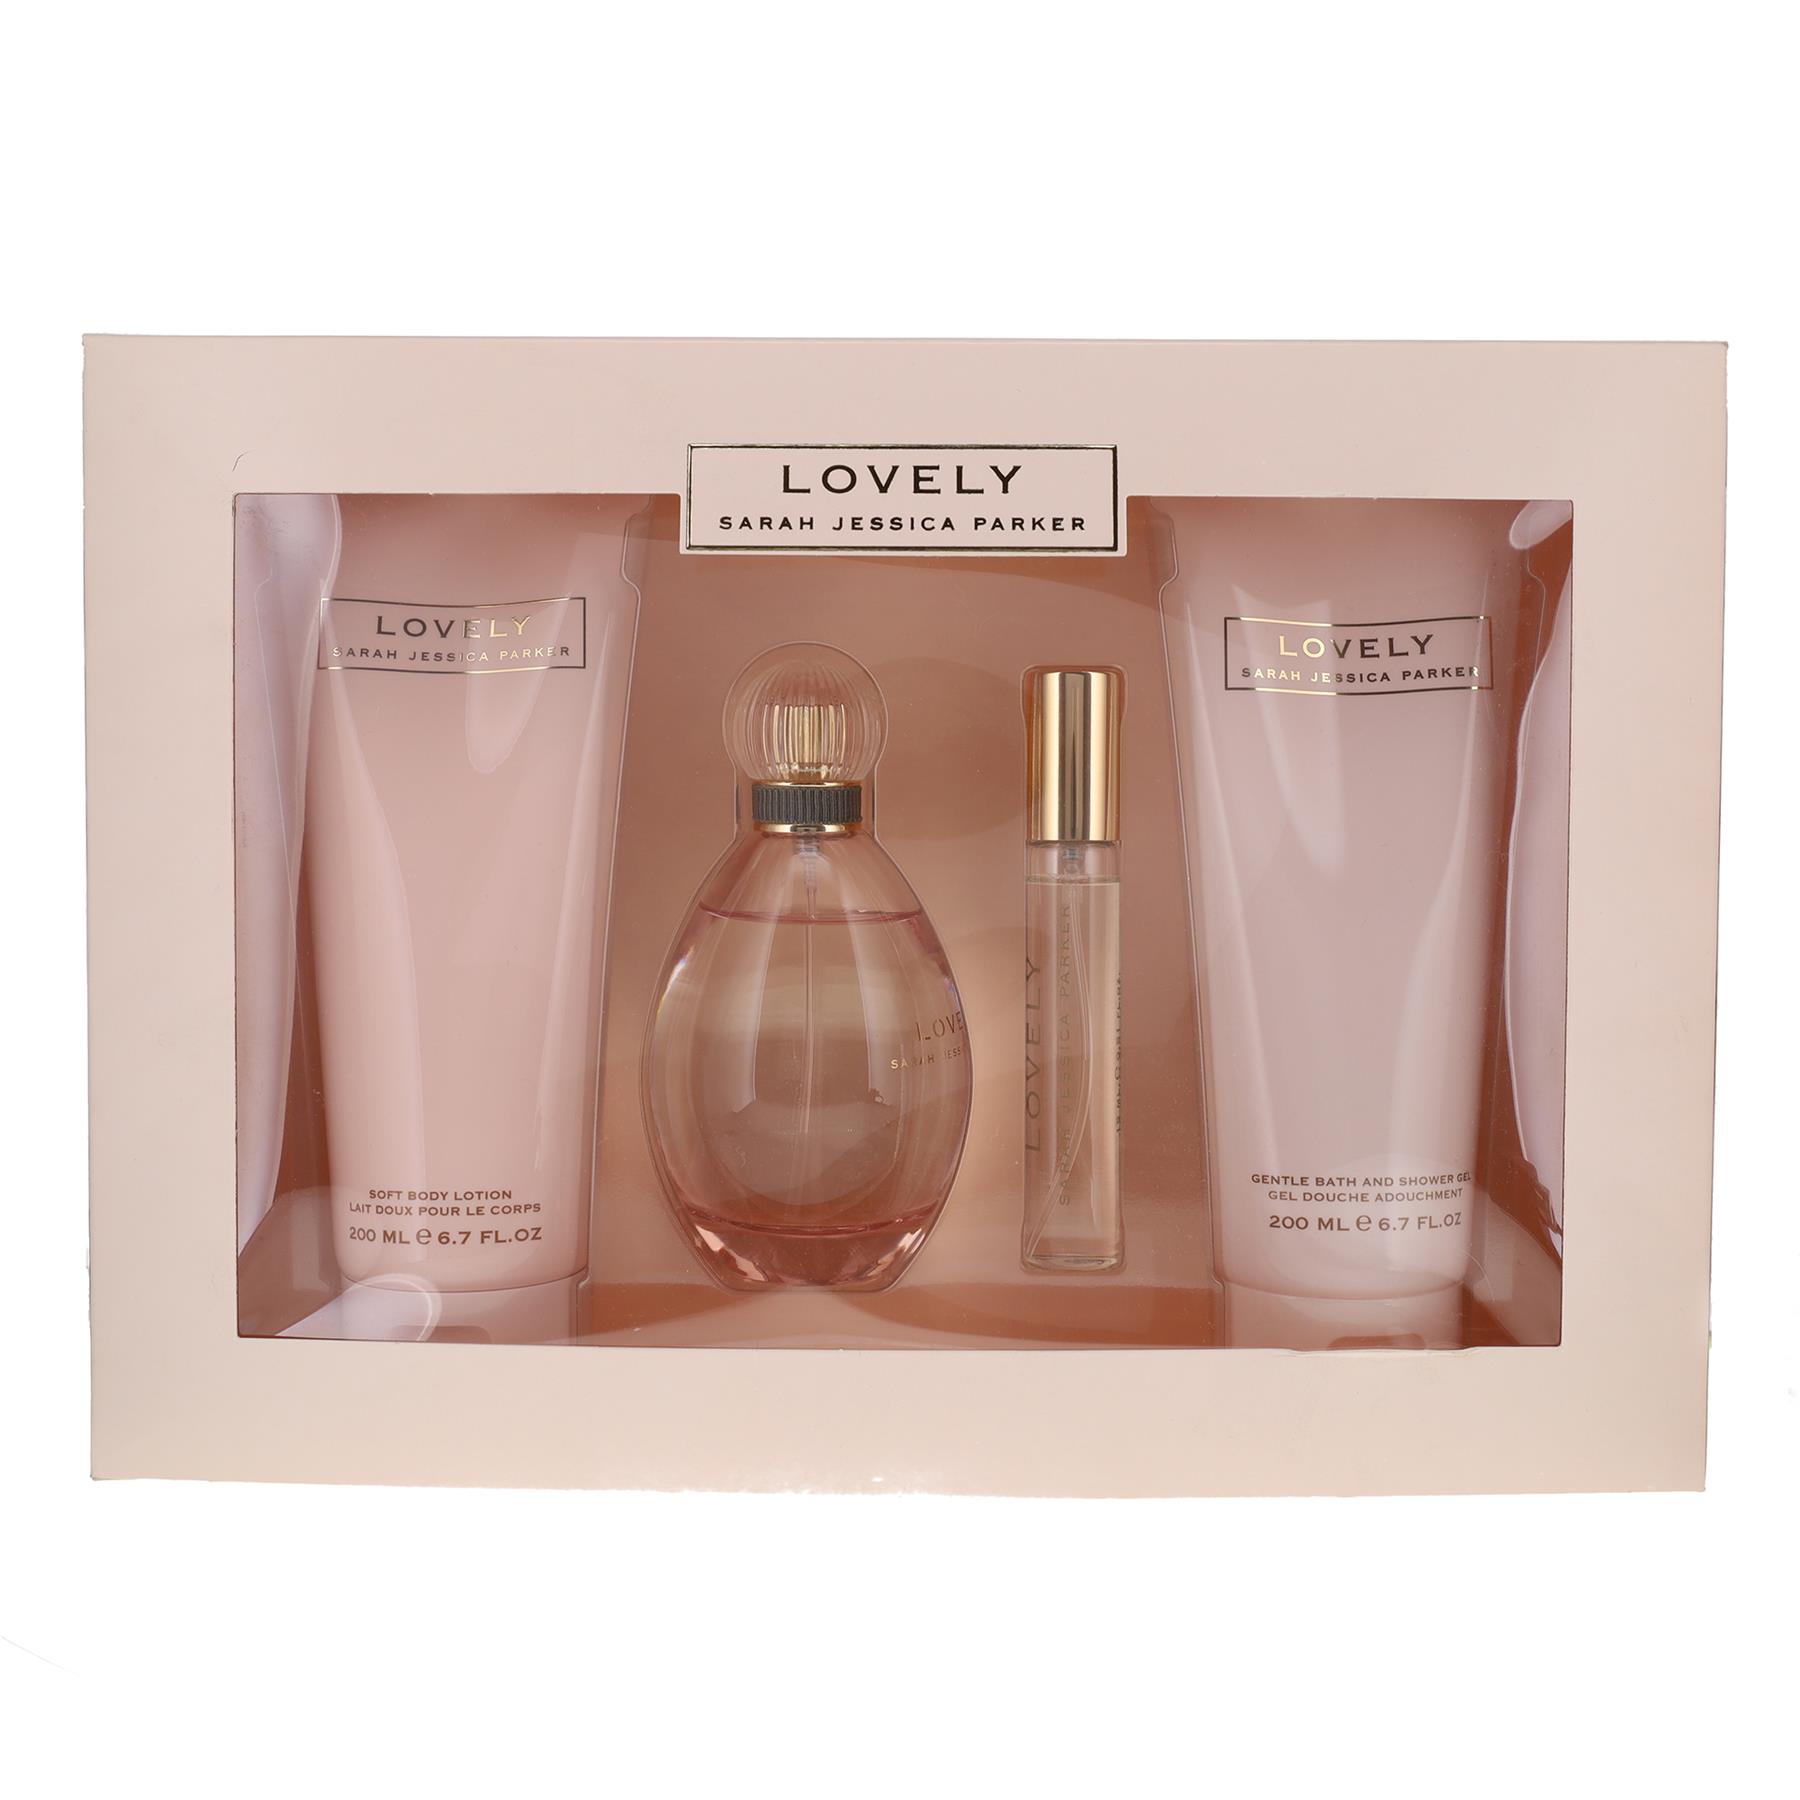 Sarah Jessica Parker Lovely 100ml Eau de Parfum Gift Set 200ml Body Lotion, 15ml Eau de Parfum,... from Perfume Plus Direct